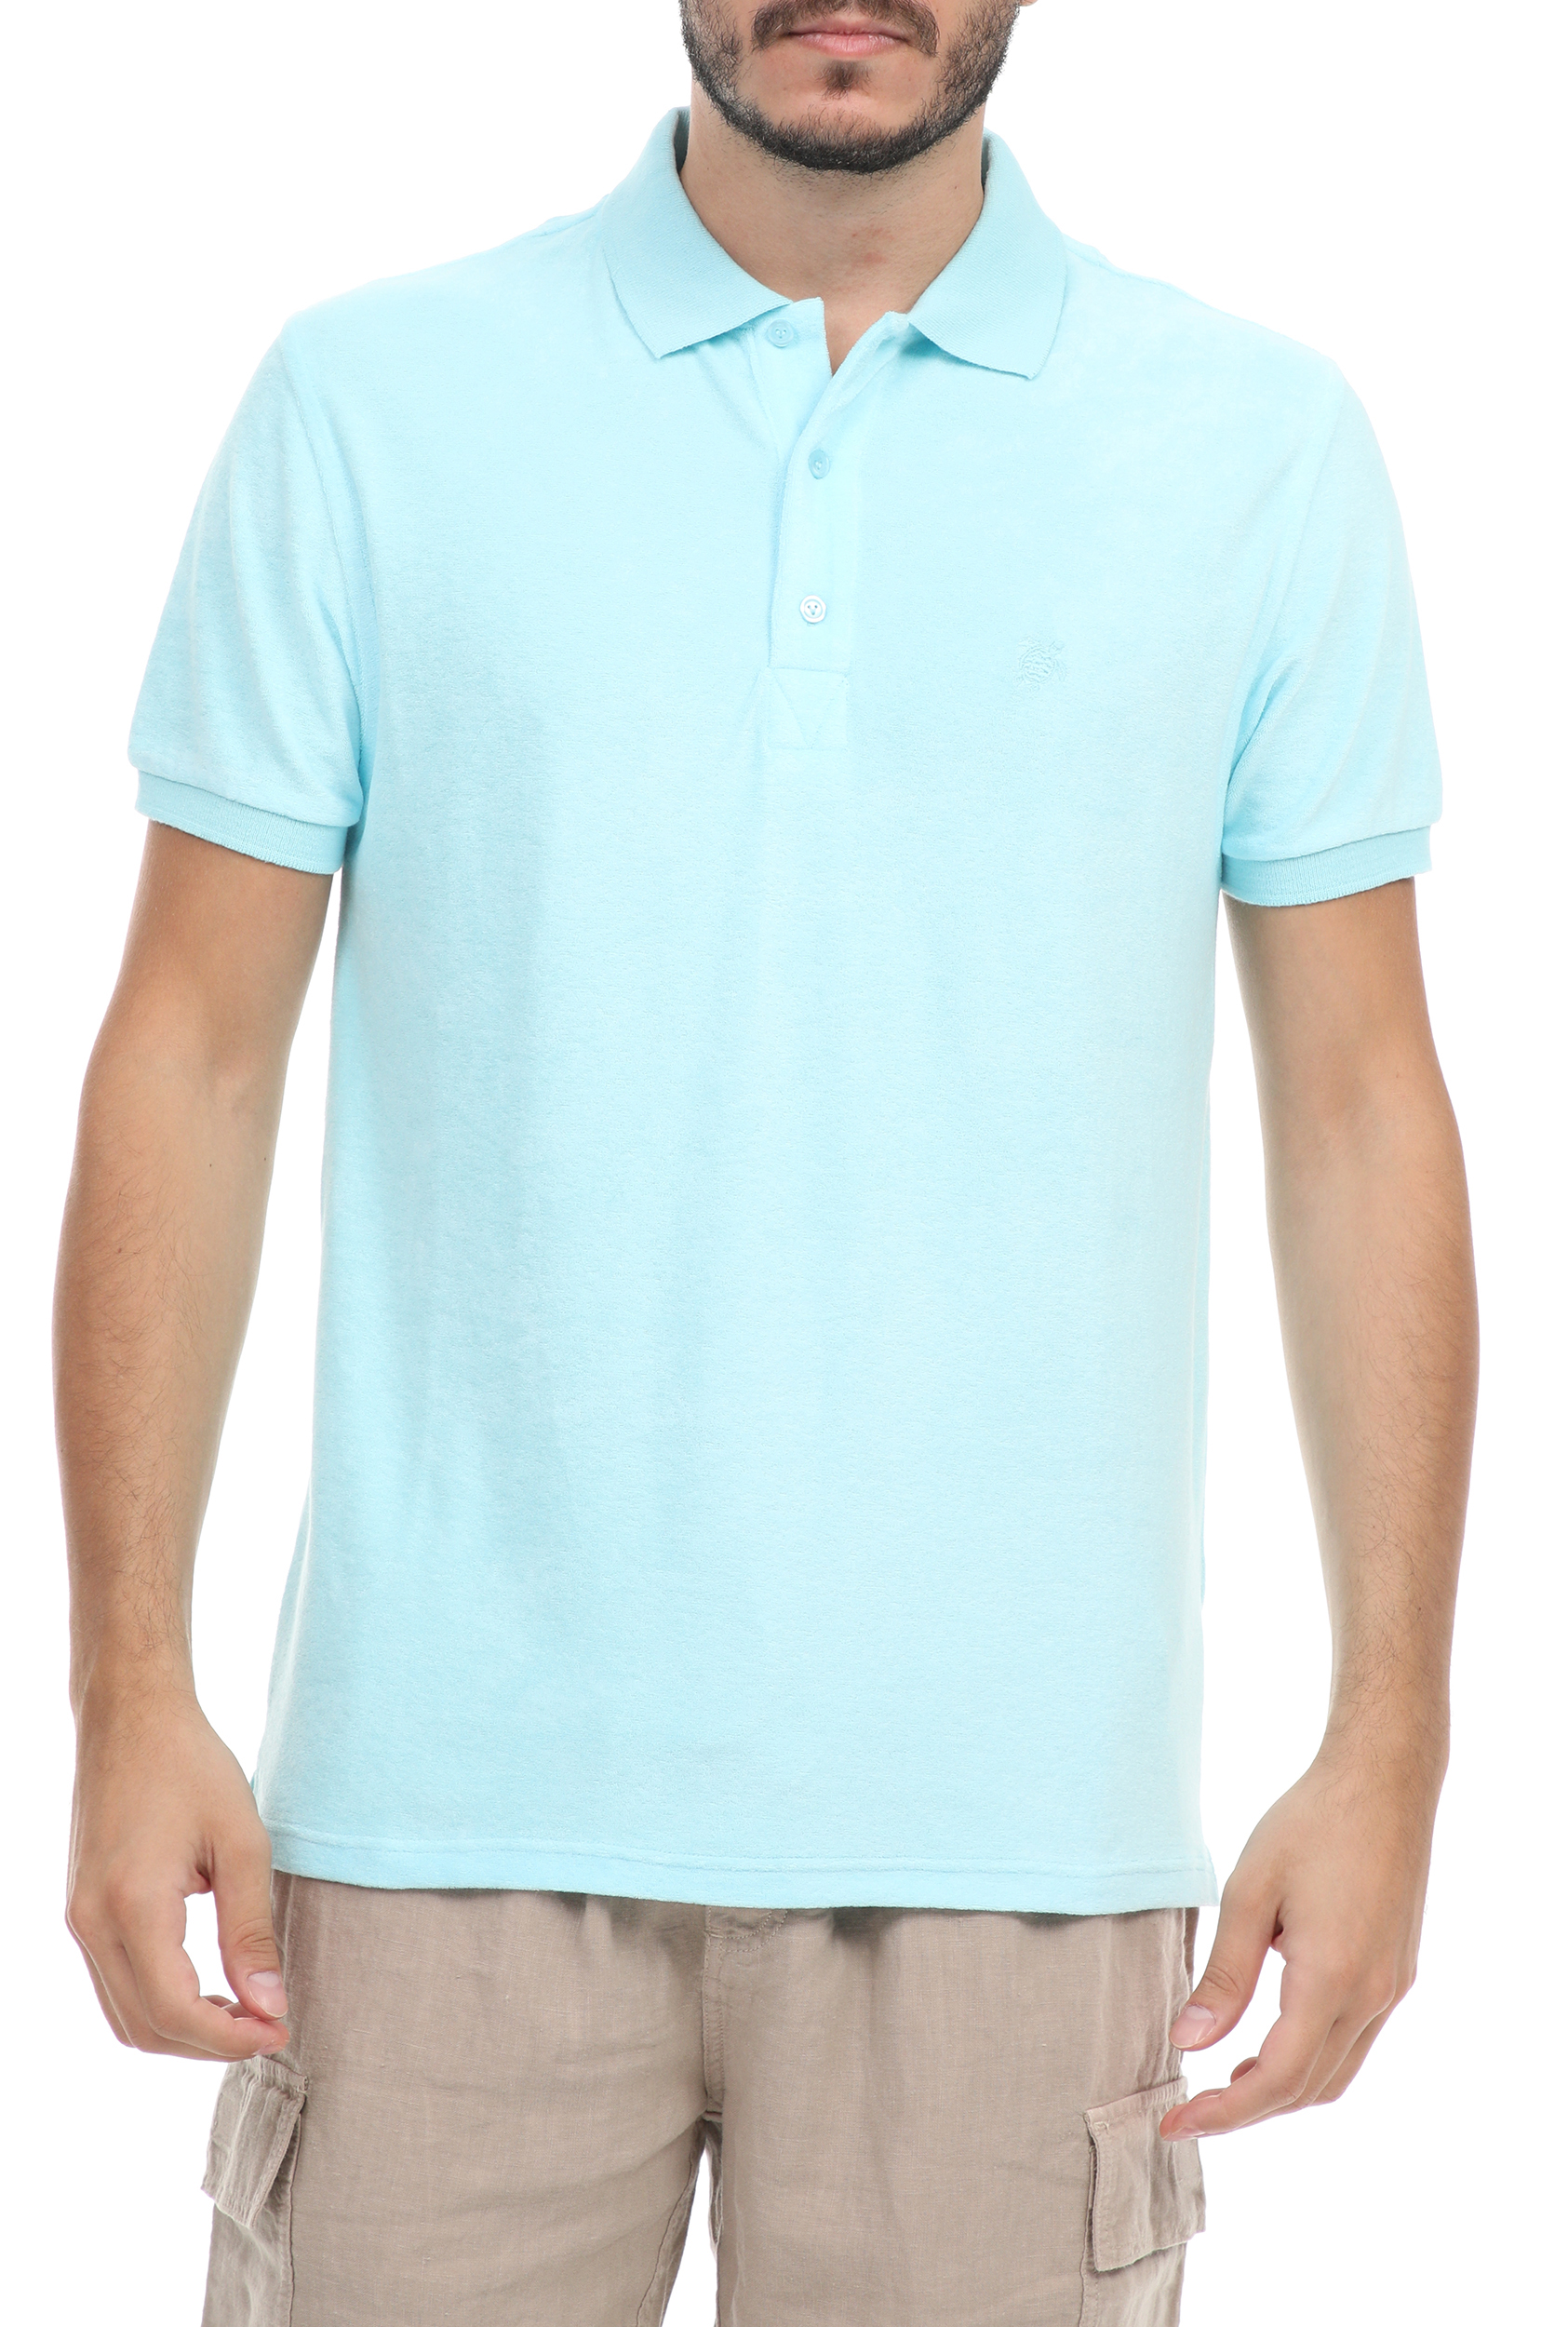 Ανδρικά/Ρούχα/Μπλούζες/Πόλο VILEBREQUIN - Ανδρική polo μπλούζα VILEBREQUIN PACIFIC μπλε